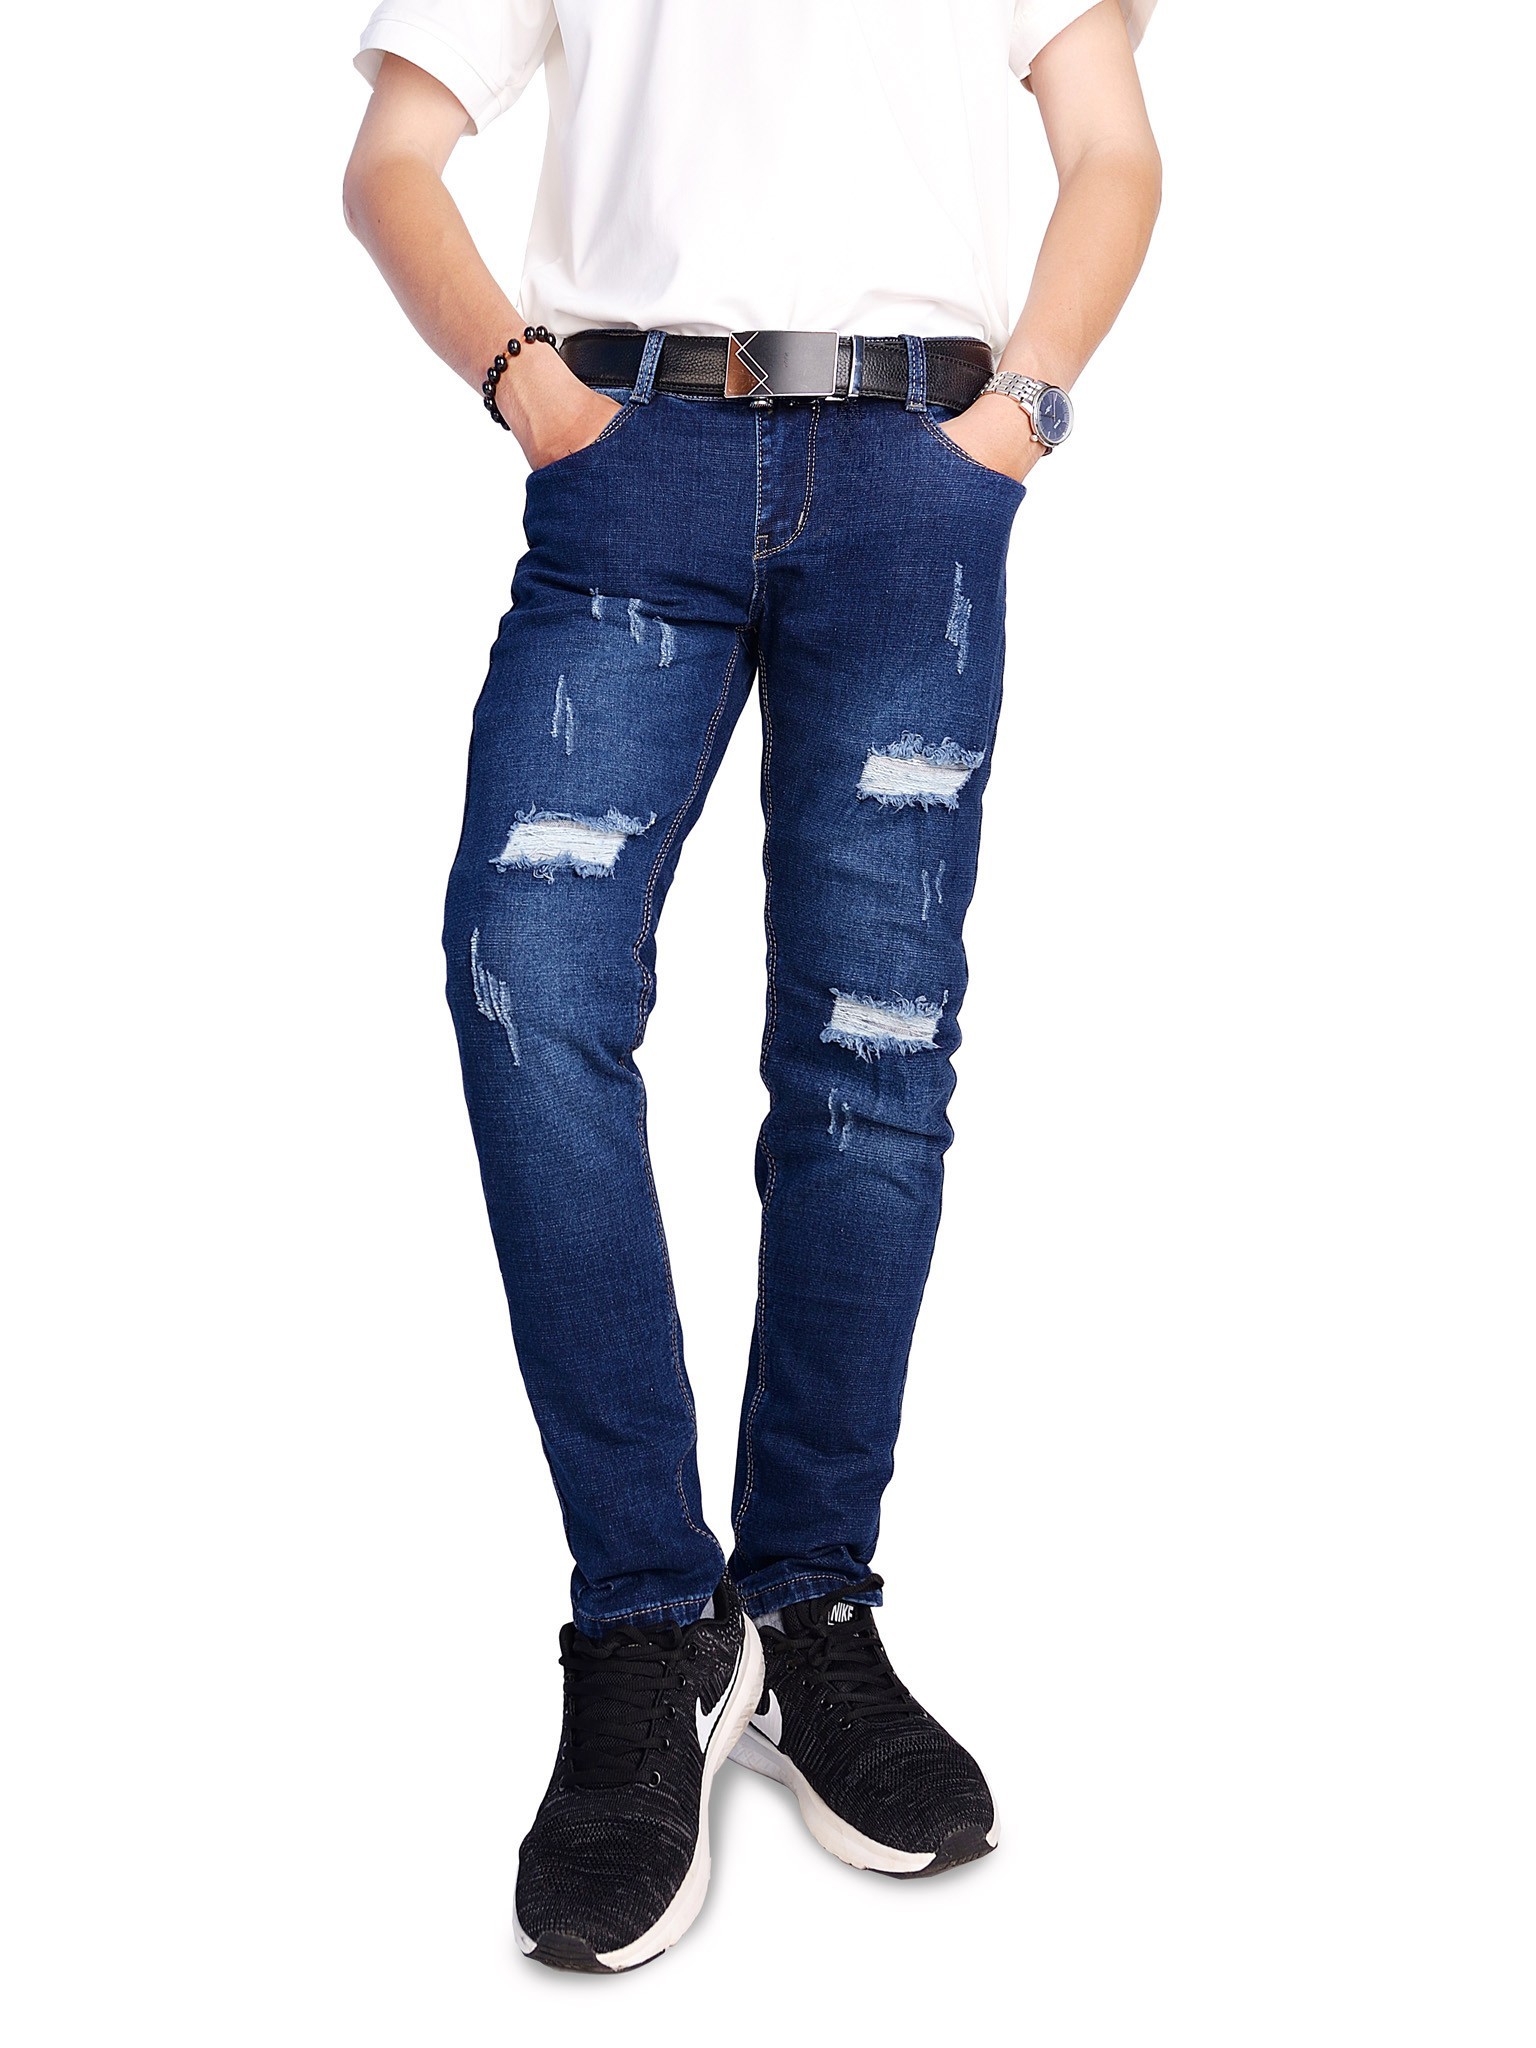 Mẹo làm quần jeans rách cực đơn giản và sành điệu